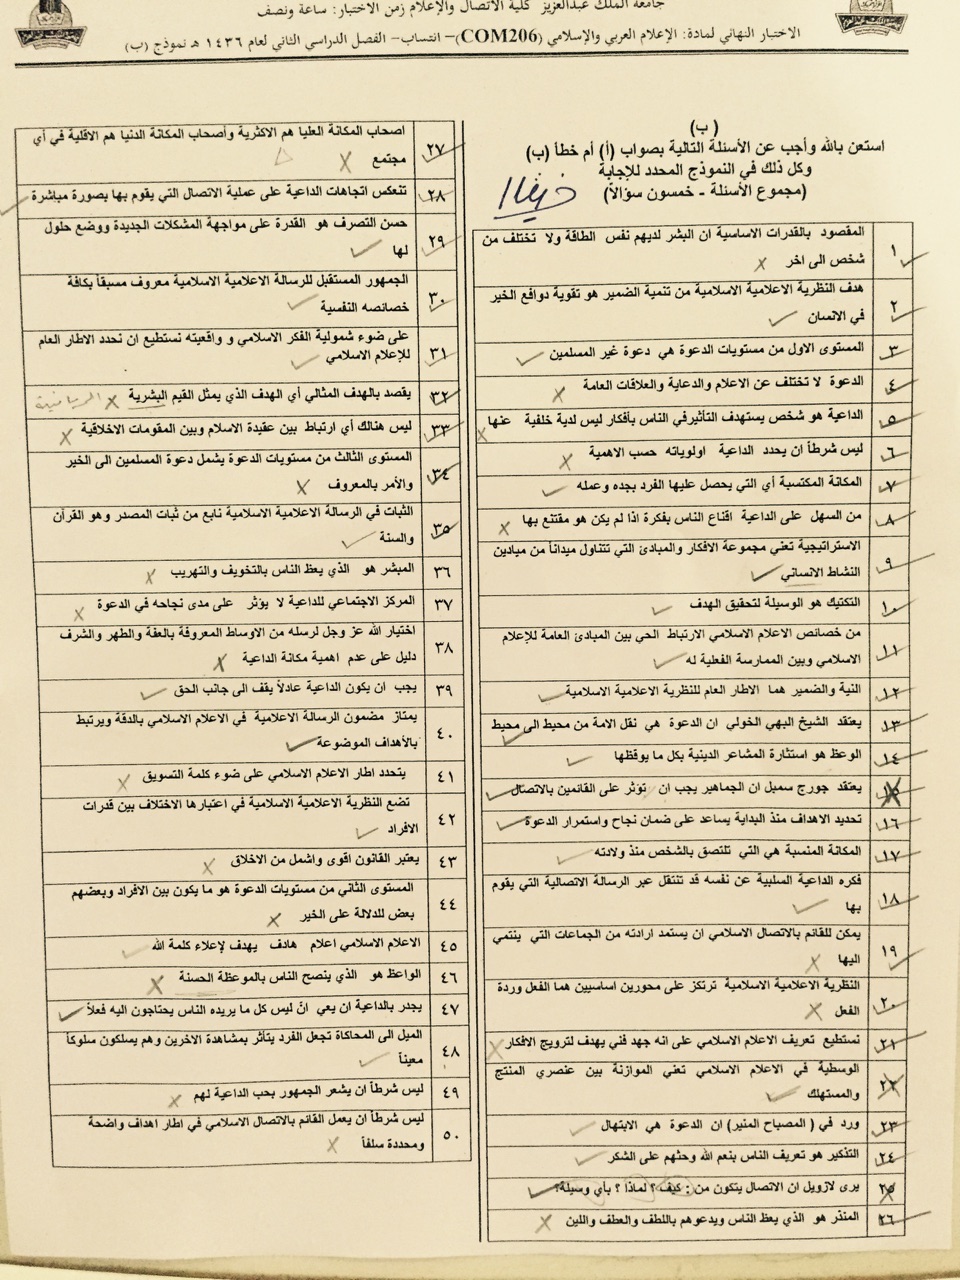 اسئلة اختبار الإعلام العربي والإسلامي com 206 انتساب الفصل الثاني 1436هـ نموذج (ب)